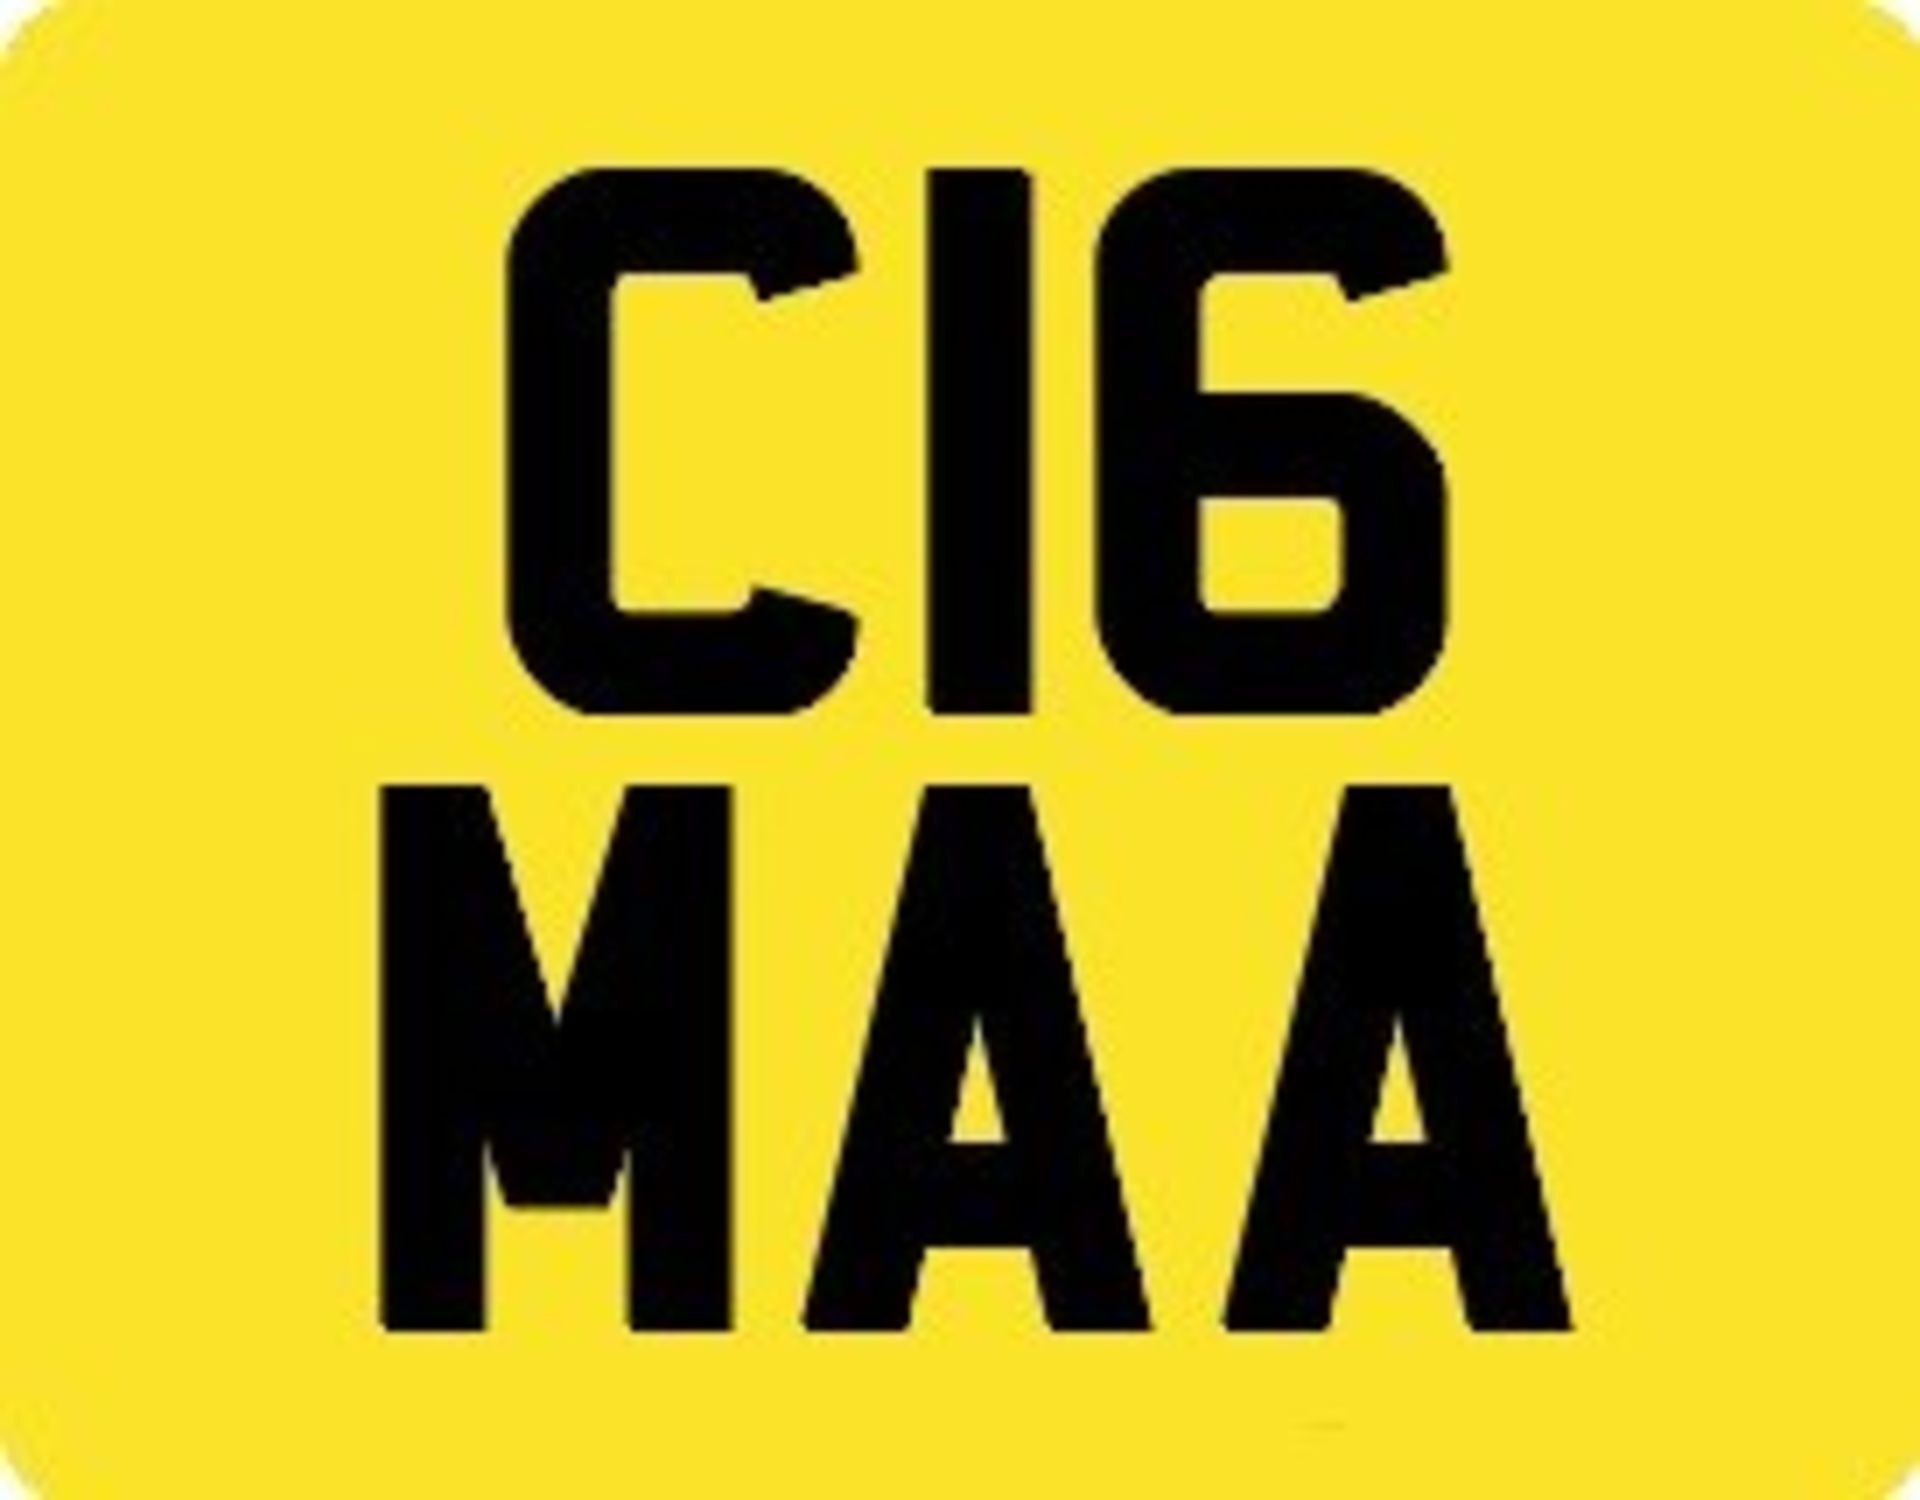 C16 MAA Registration Number